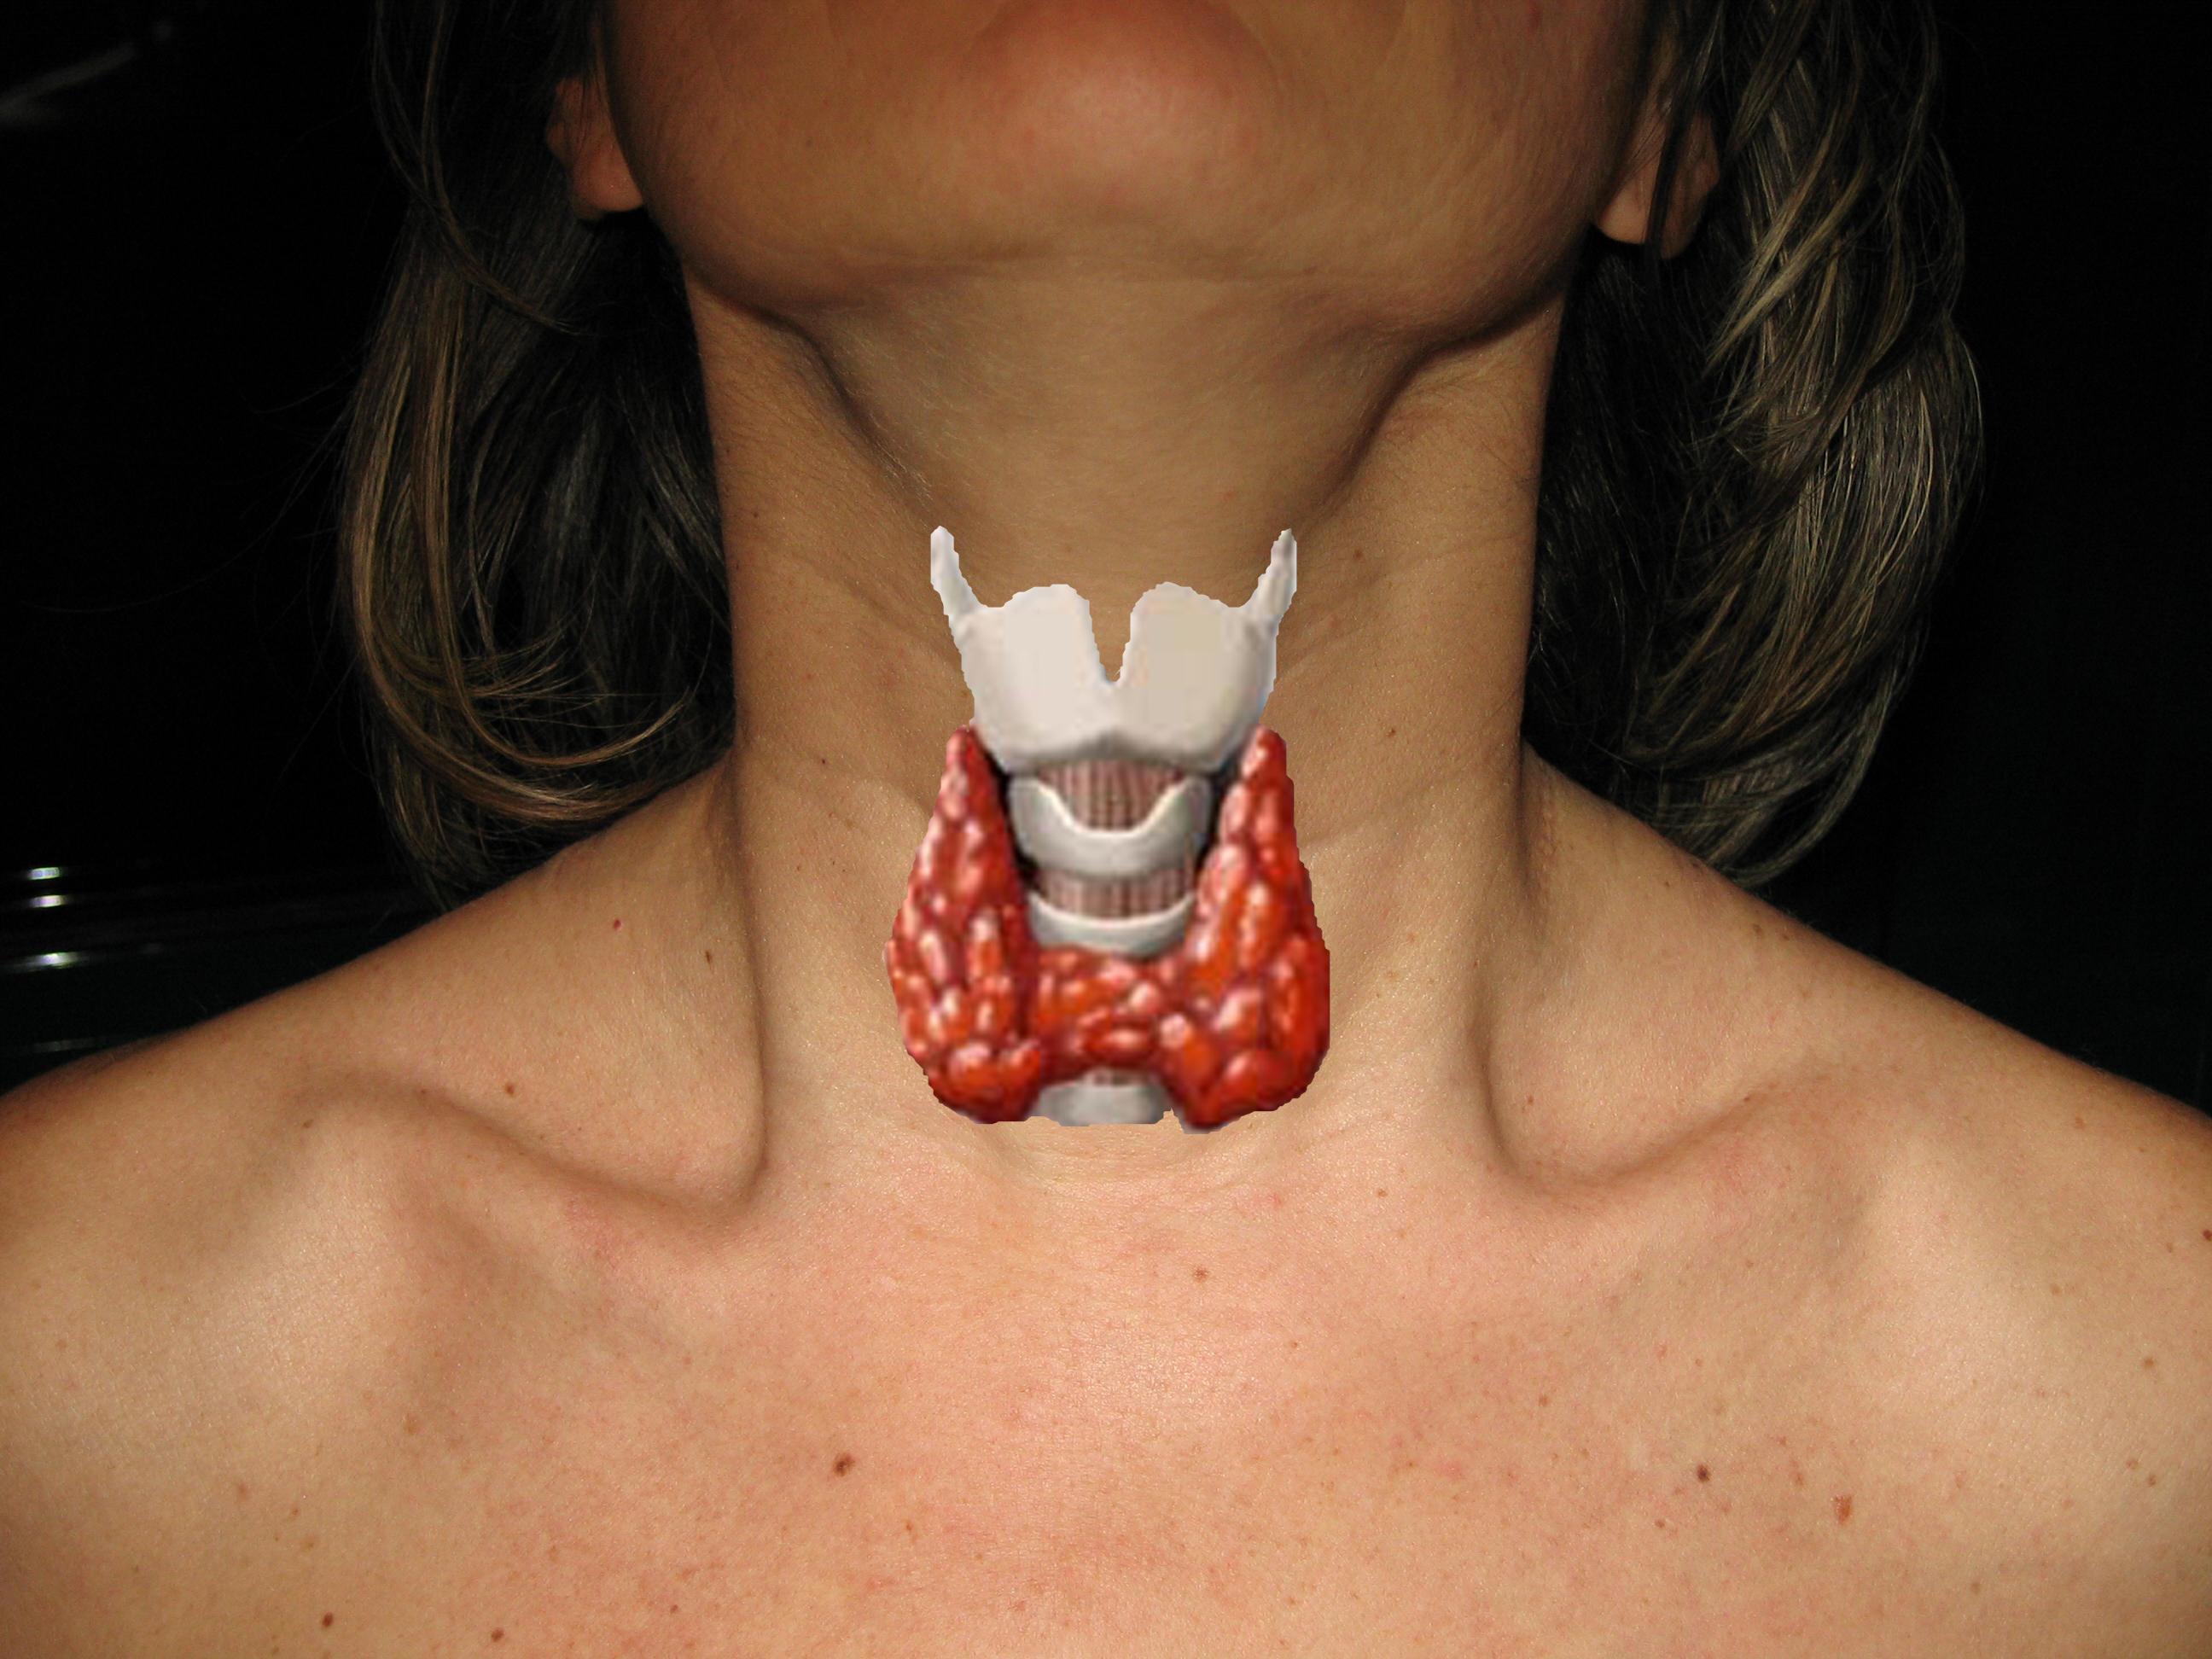 Rappresentazione schematica della tiroide